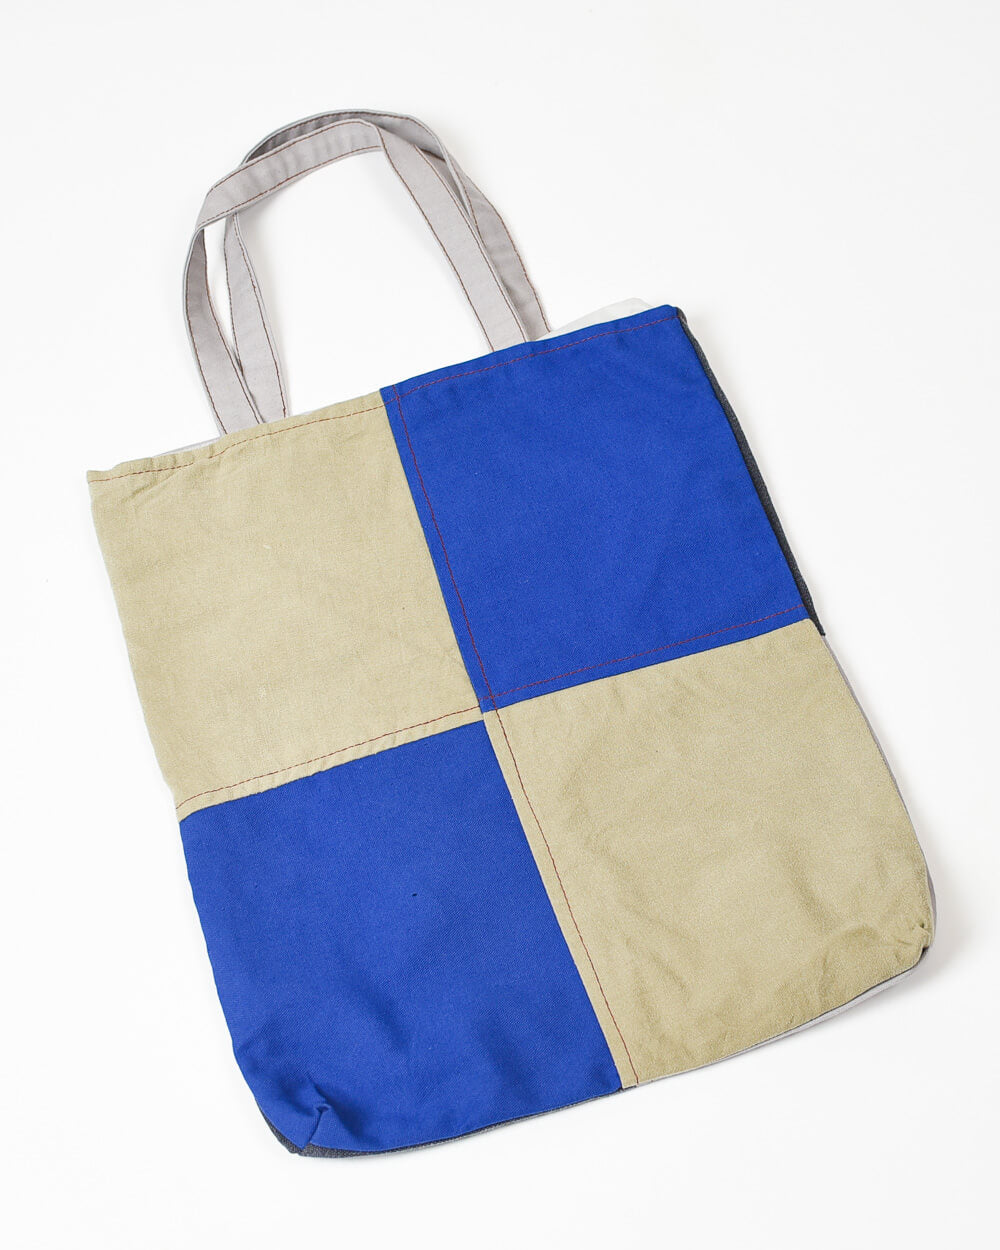  Carhartt Rework Tote Bag